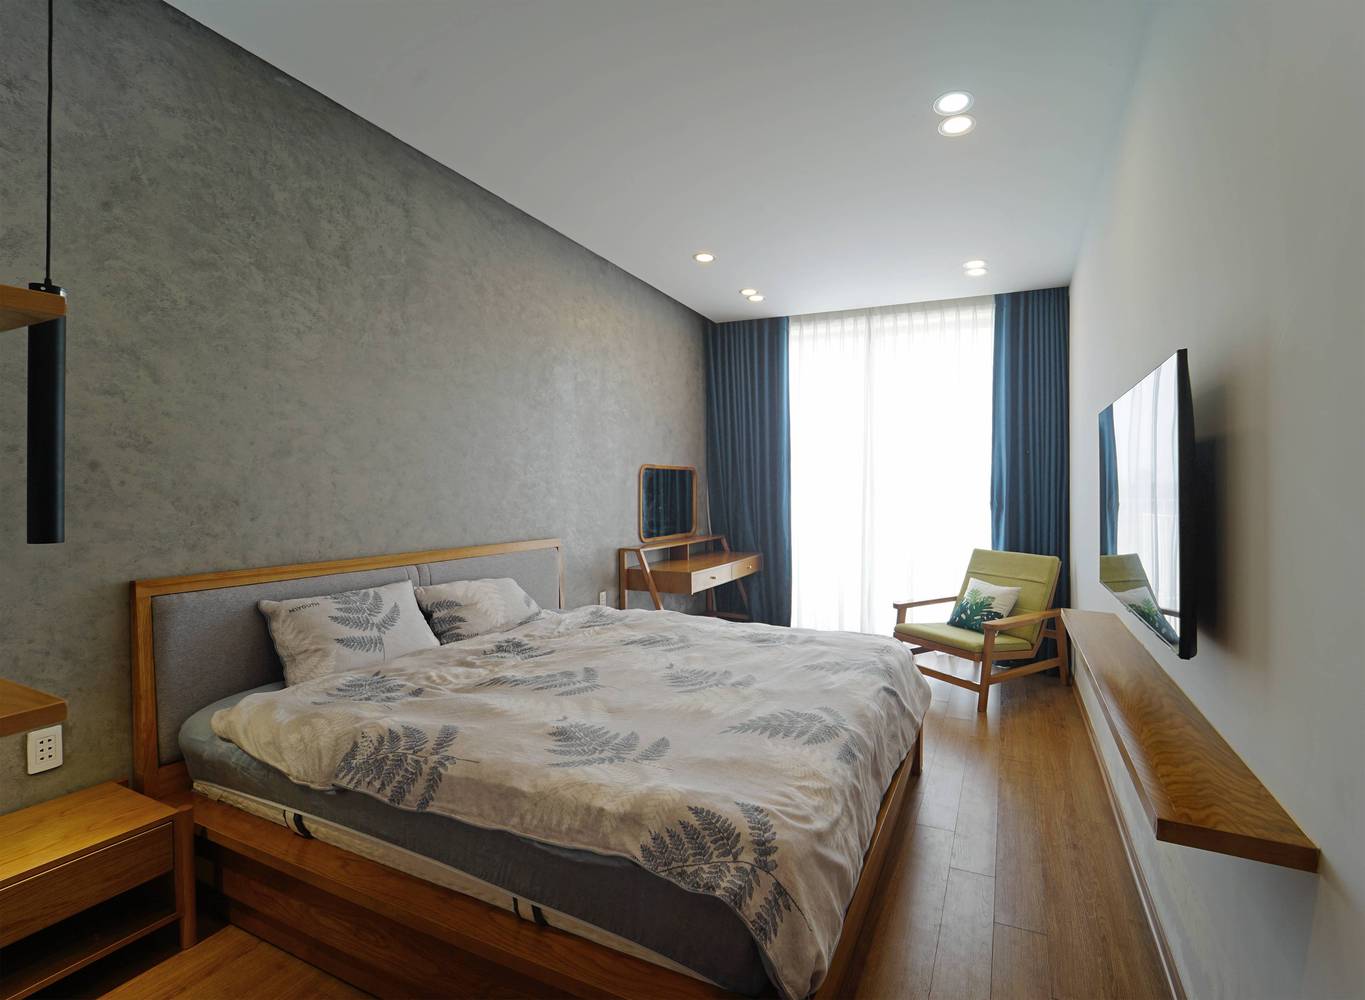 Phòng ngủ master có thiết kế đơn giản, tiết chế tối đa đồ nội thất. Cửa kính lớn cho phép ánh sáng tự nhiên ngập tràn không gian phòng.